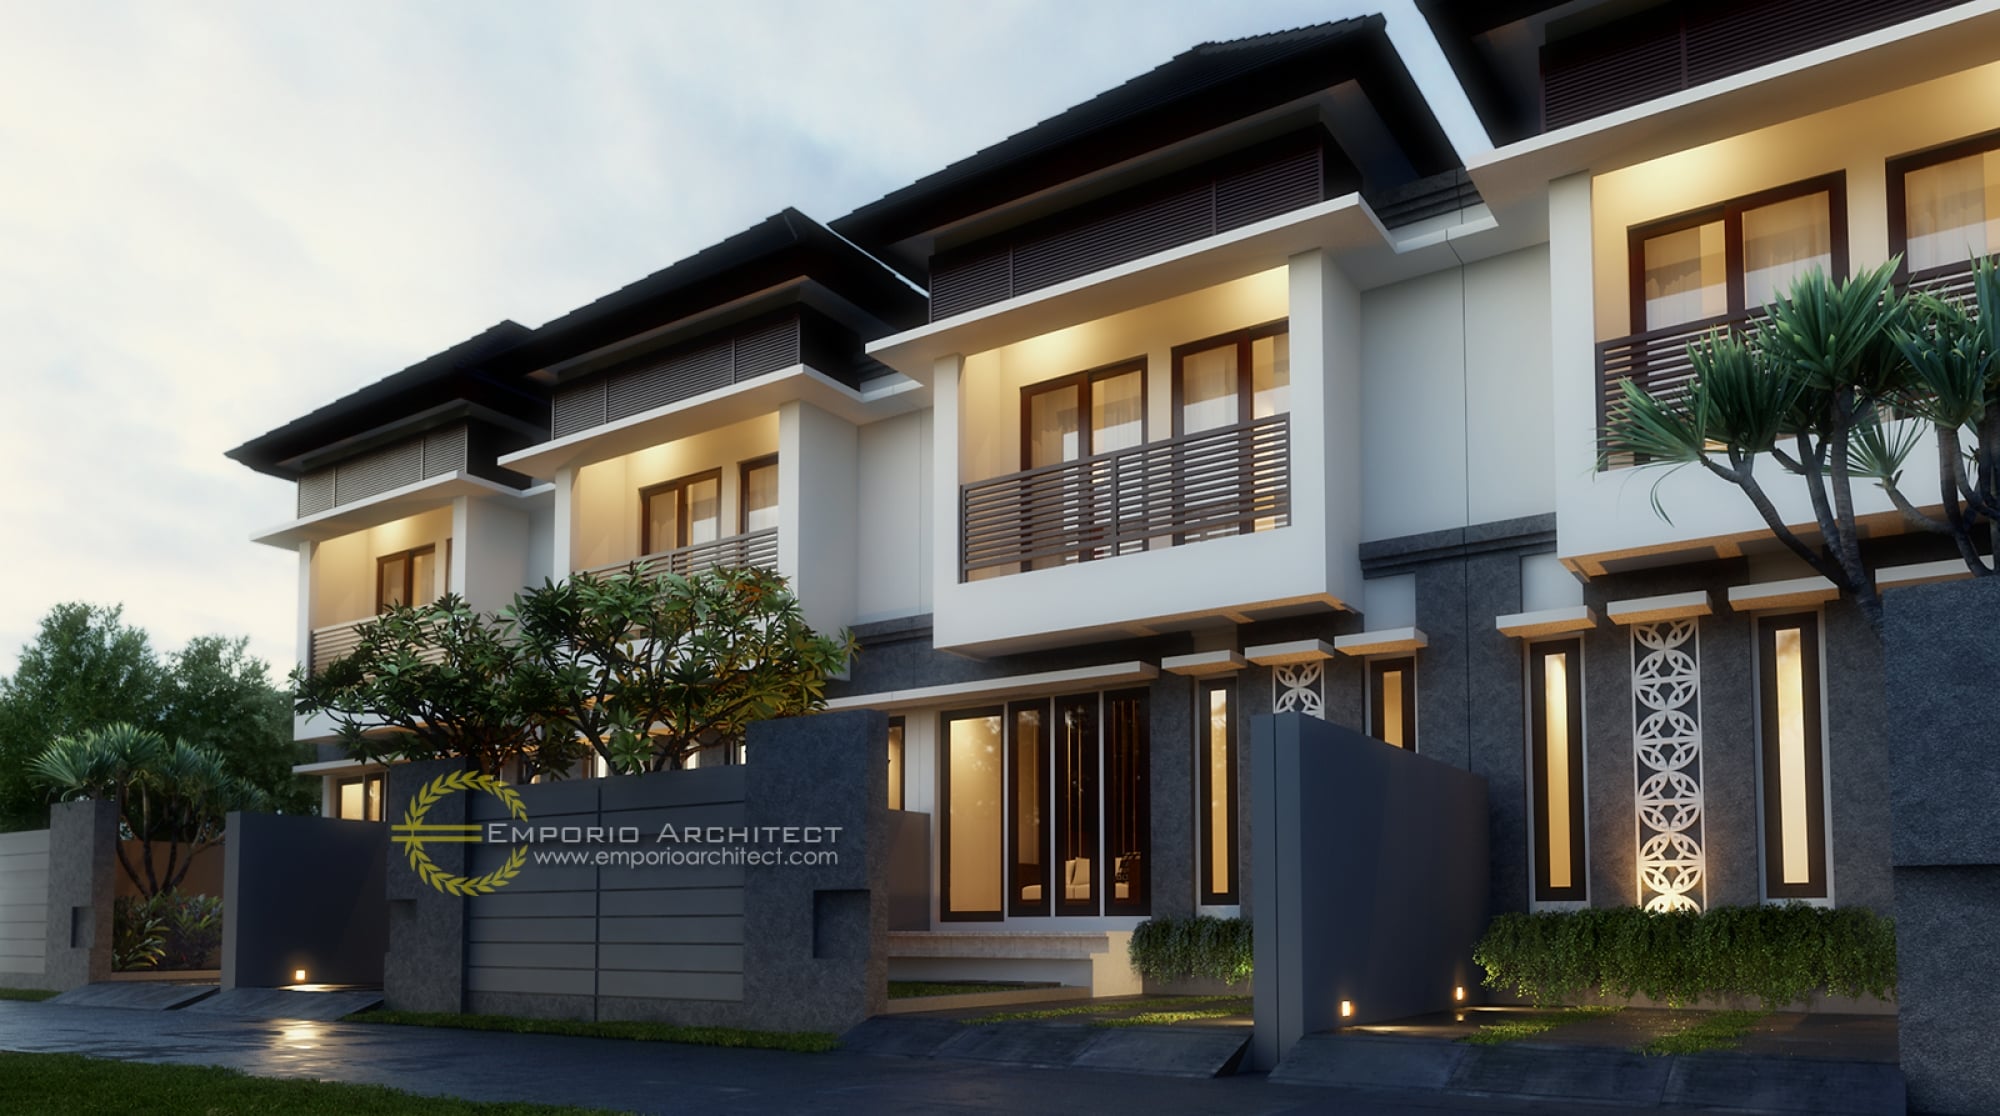 89 Ide Desain Pagar Rumah Bali Modern Yang Wajib Kamu 